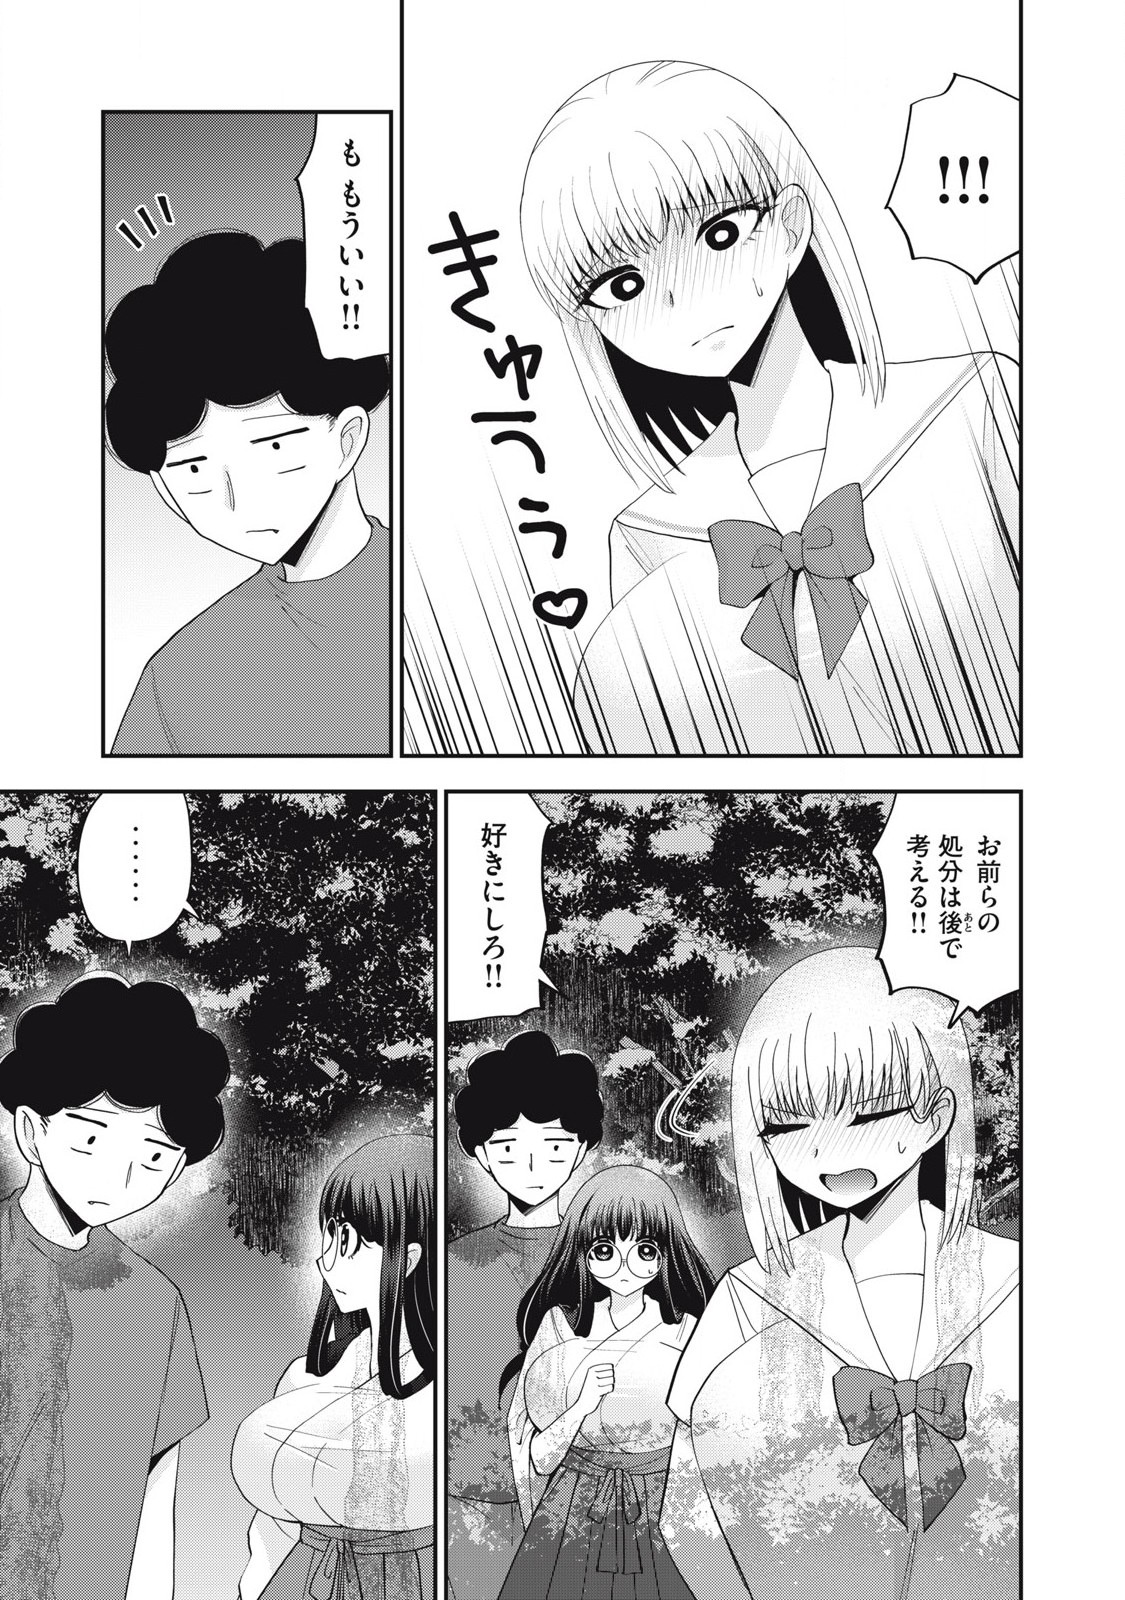 Yumeutsutsu no Hana no Sono - Chapter 23 - Page 3